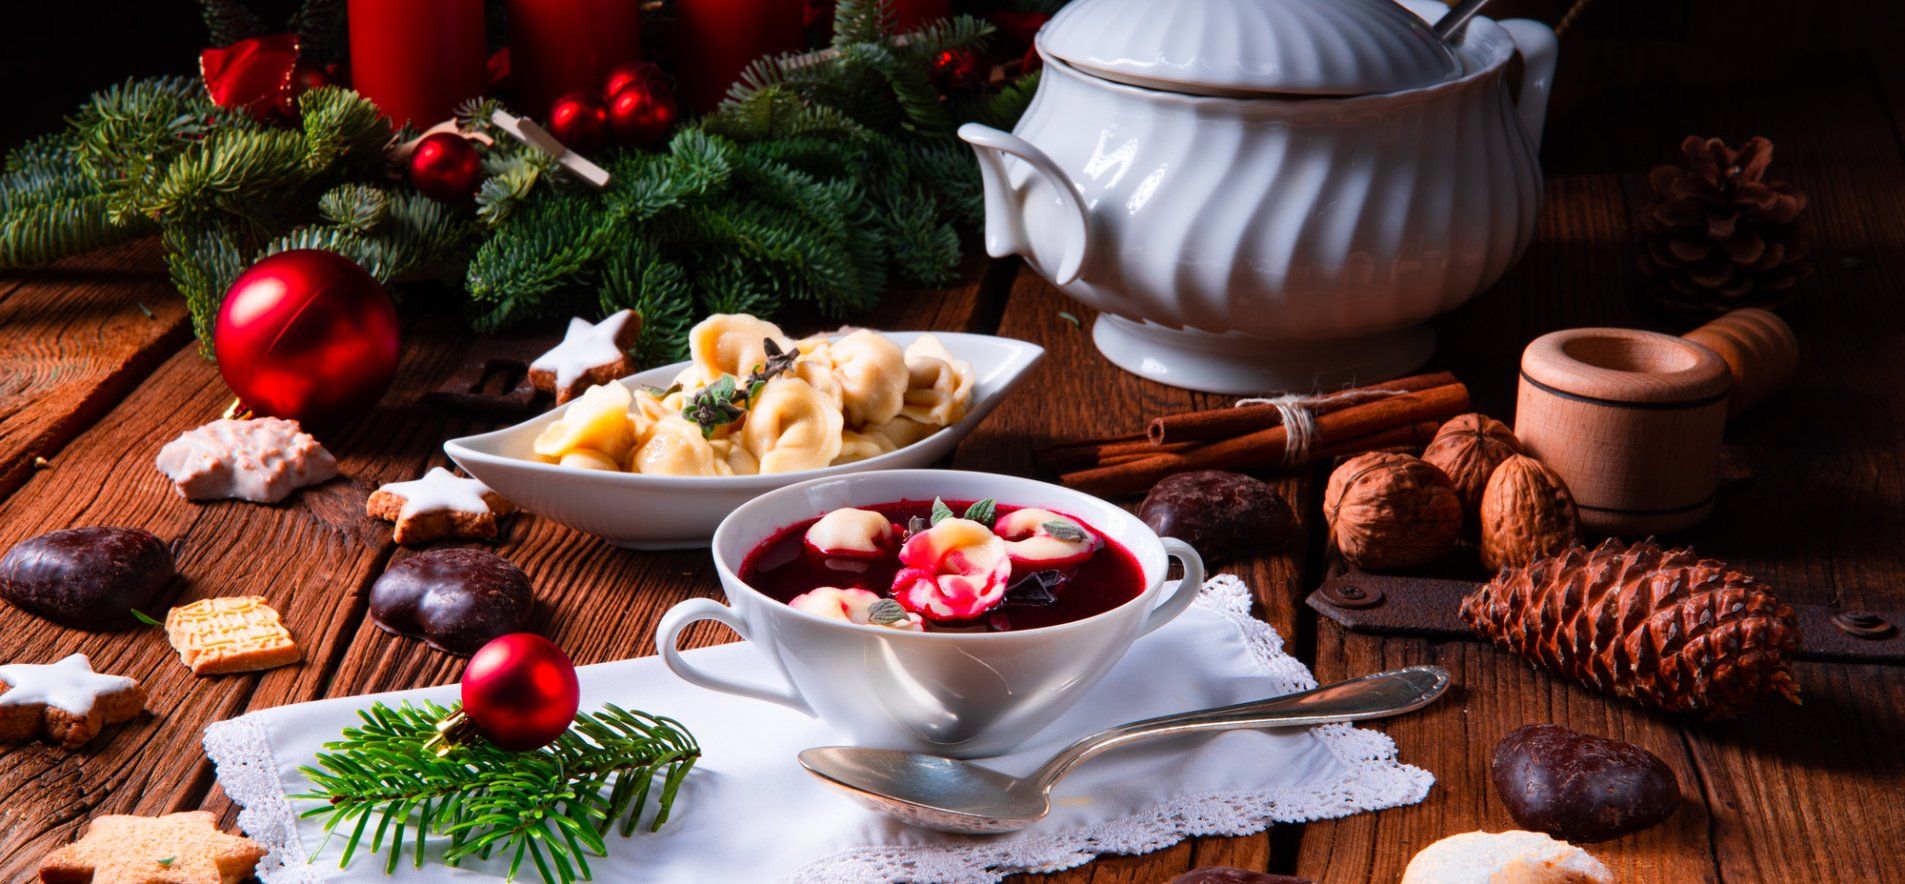 Постный борщ на Сочельник - приготовьте с ушками - давние рецепты на Рождество - Новости Вкусно